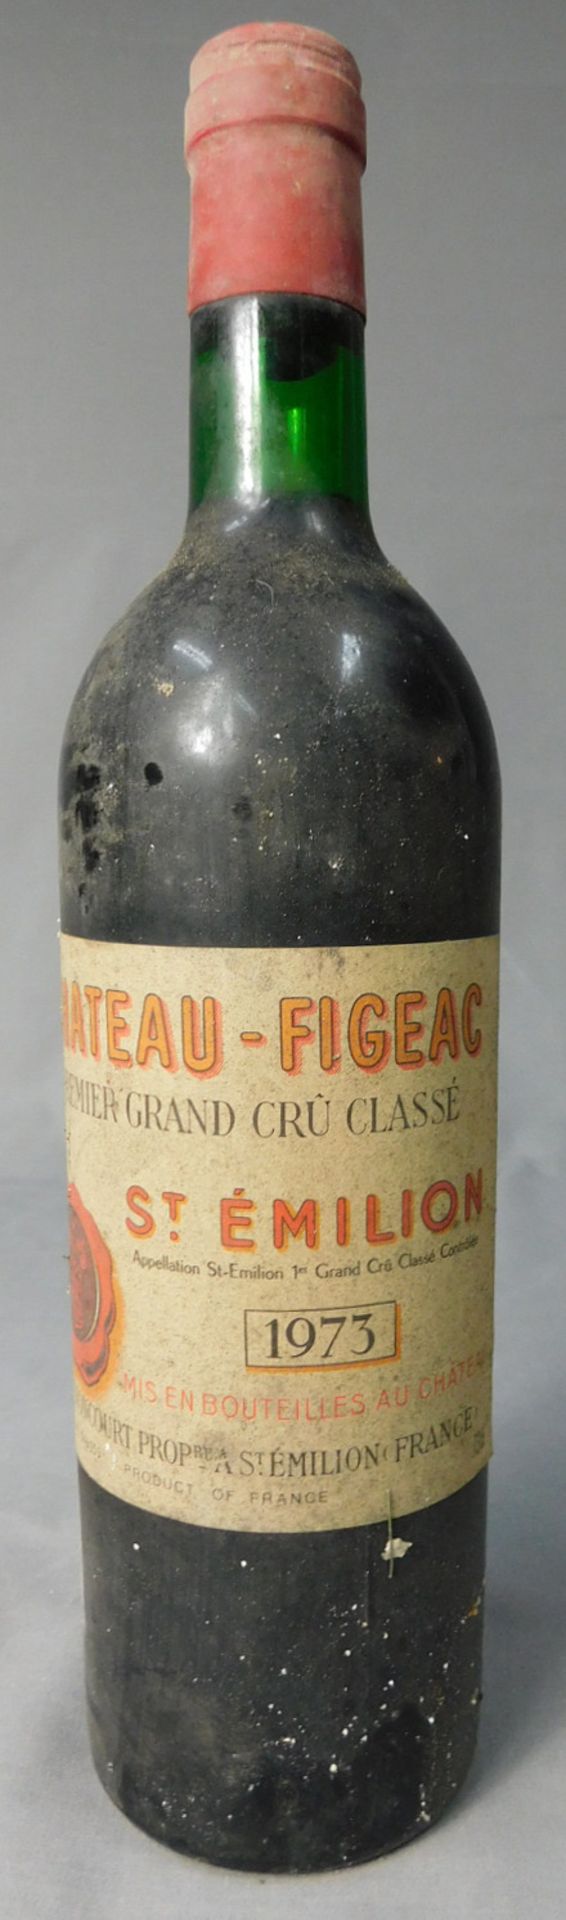 1973 Chateau - Figeac. Premier Grand Cru Classé.